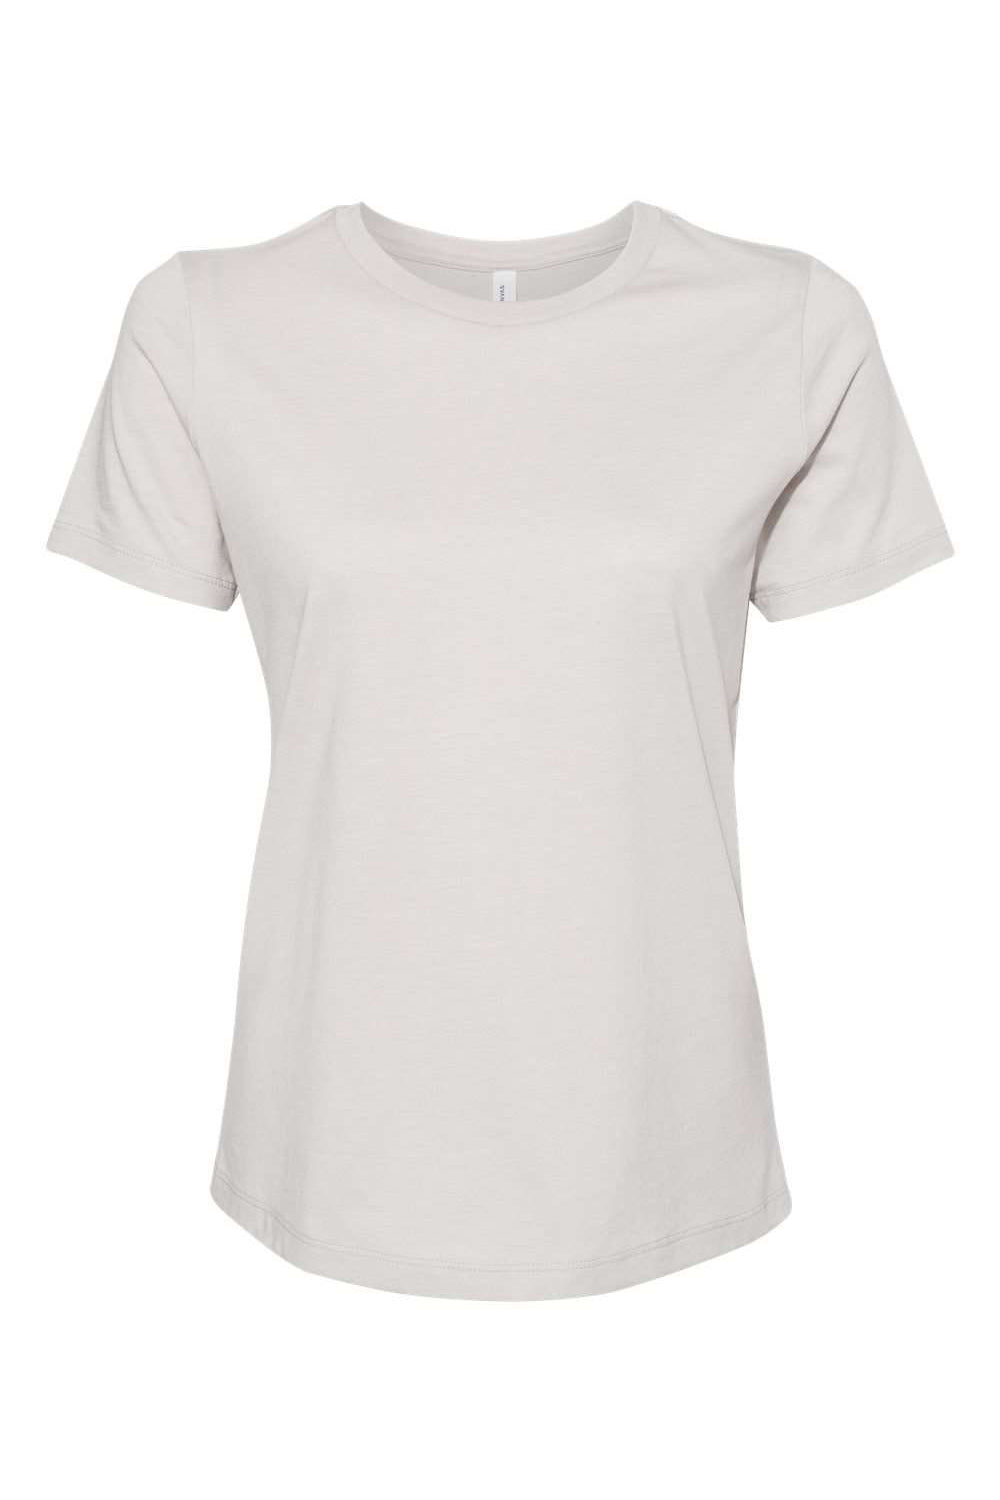 Bella + Canvas BC6400CVC/6400CVC Womens CVC Short Sleeve Crewneck T-Shirt Heather Cool Grey Flat Front